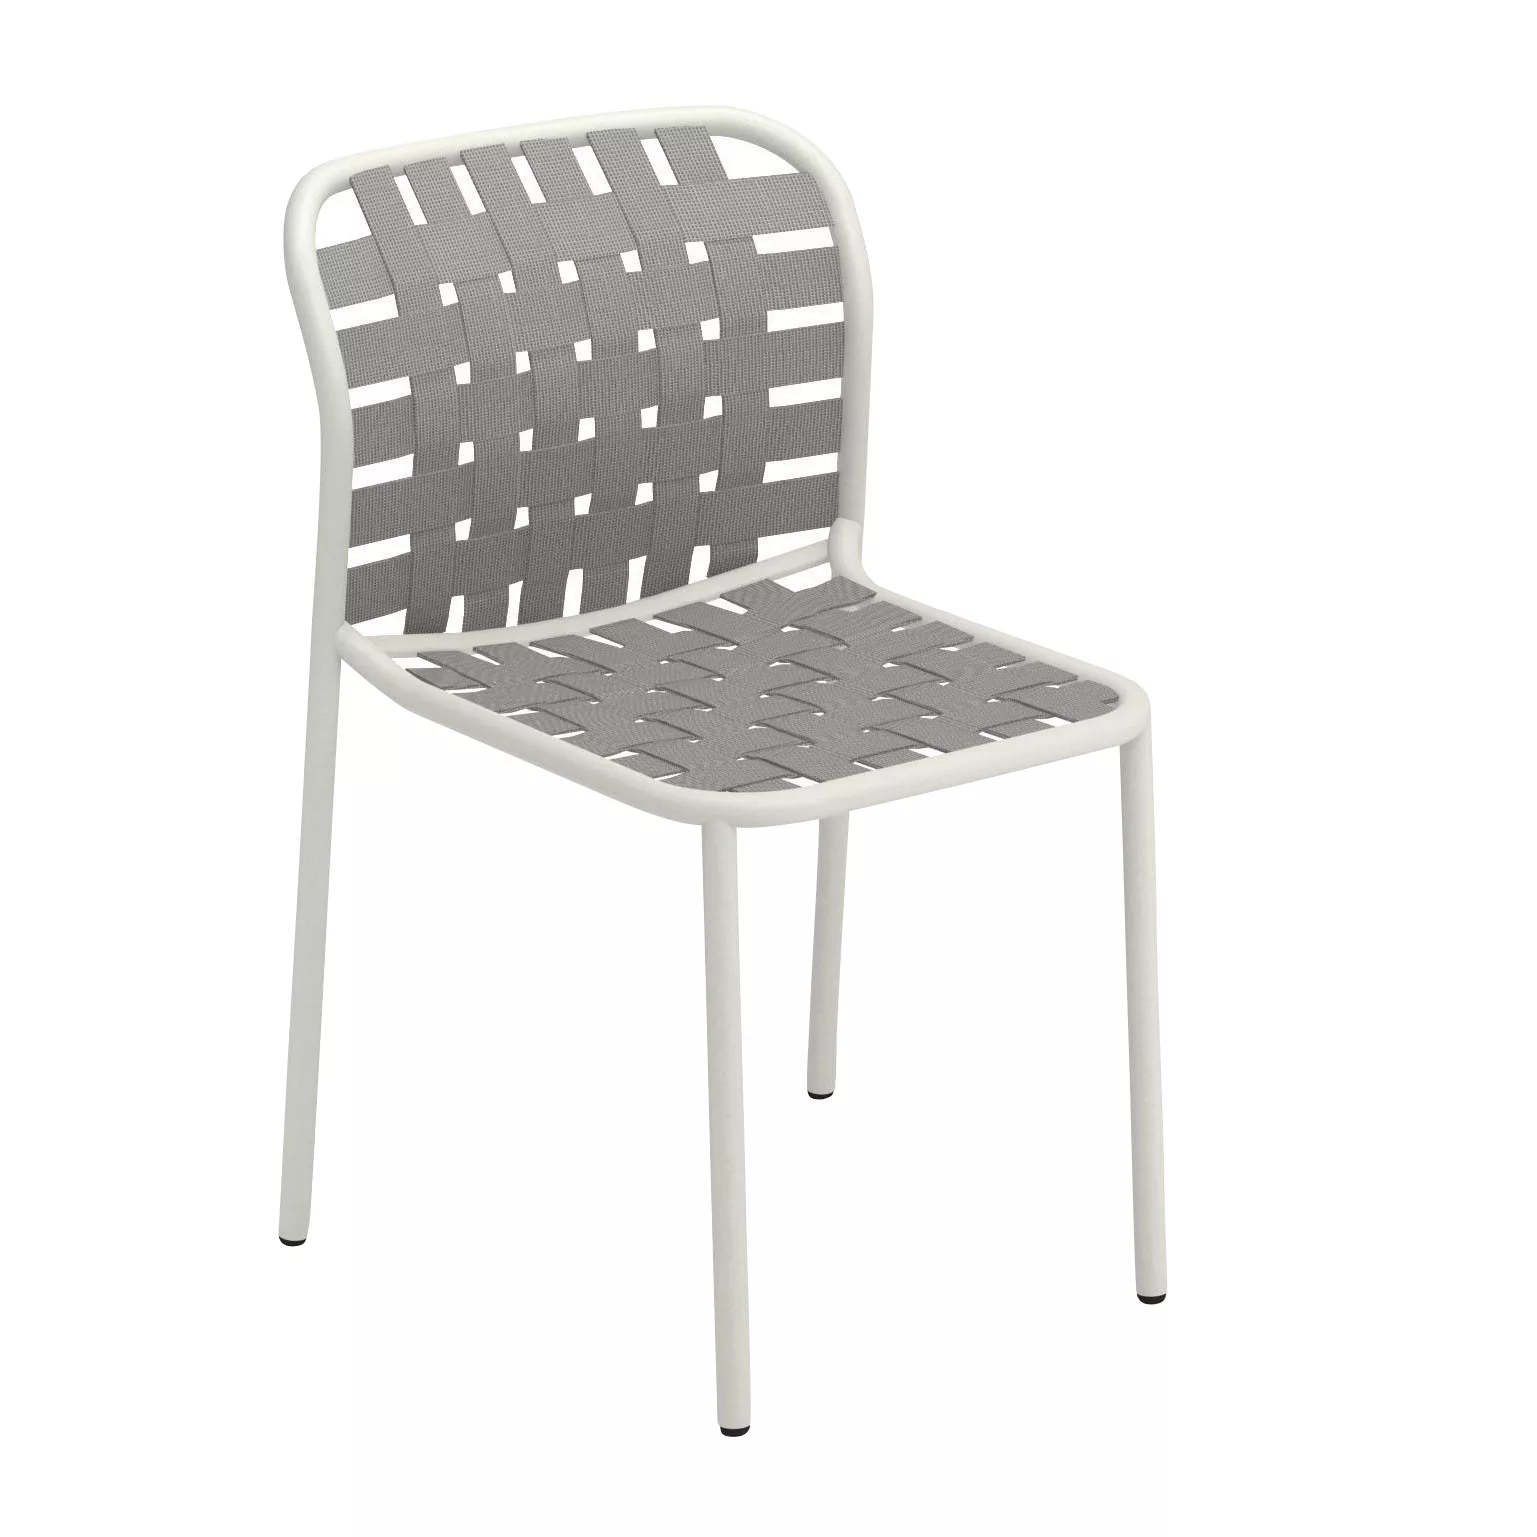 emu - Yard Gartenstuhl - weiß, graugrün/Sitz elastische Gurte graugrün/BxHx günstig online kaufen